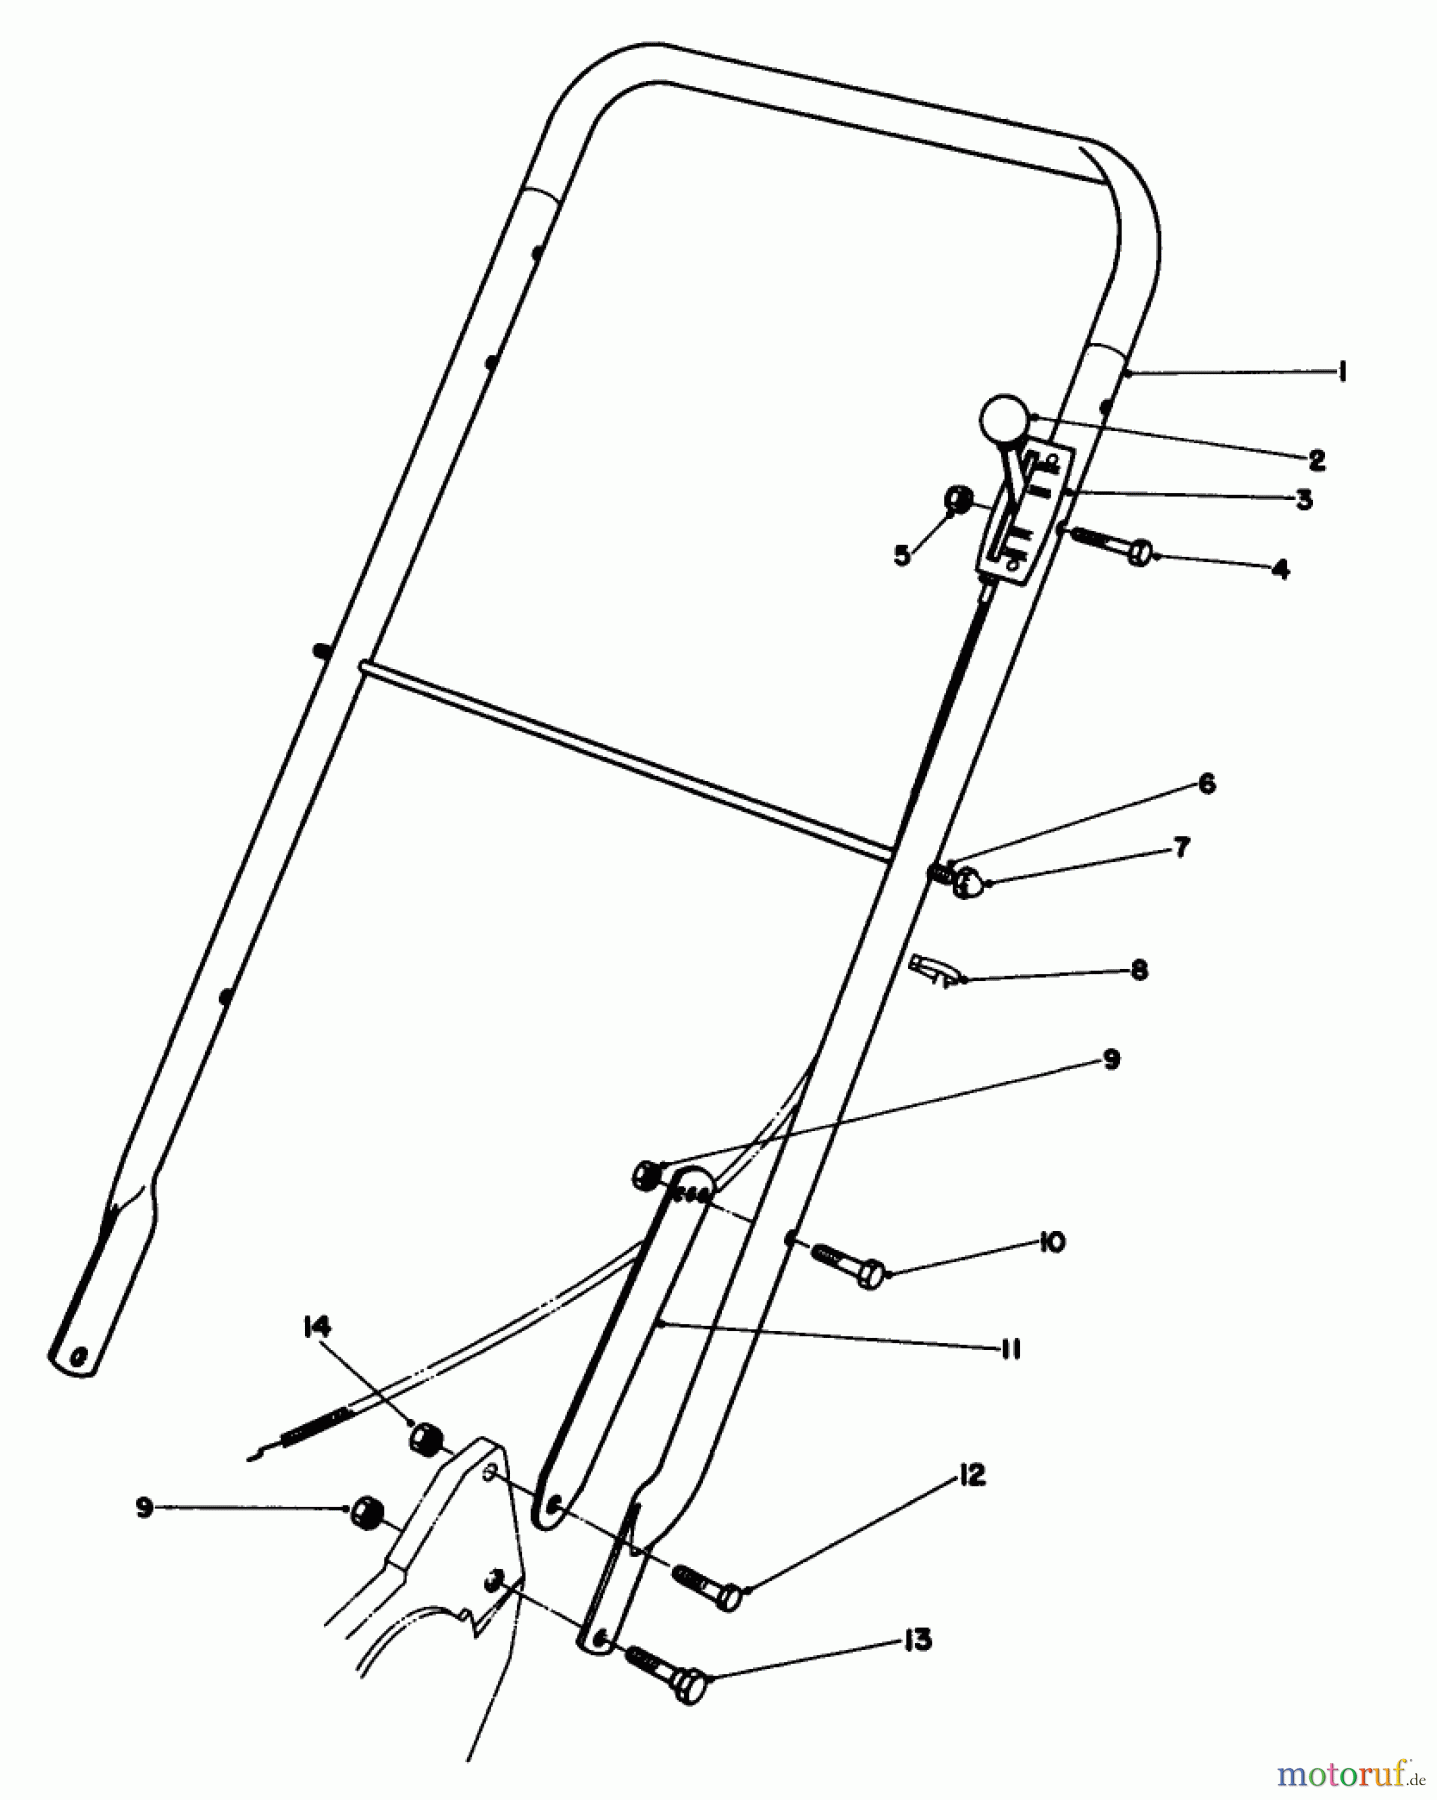  Toro Neu Mowers, Walk-Behind Seite 2 22020 - Toro Lawnmower, 1985 (5000001-5999999) HANDLE ASSEMBLY (MODEL 22015)